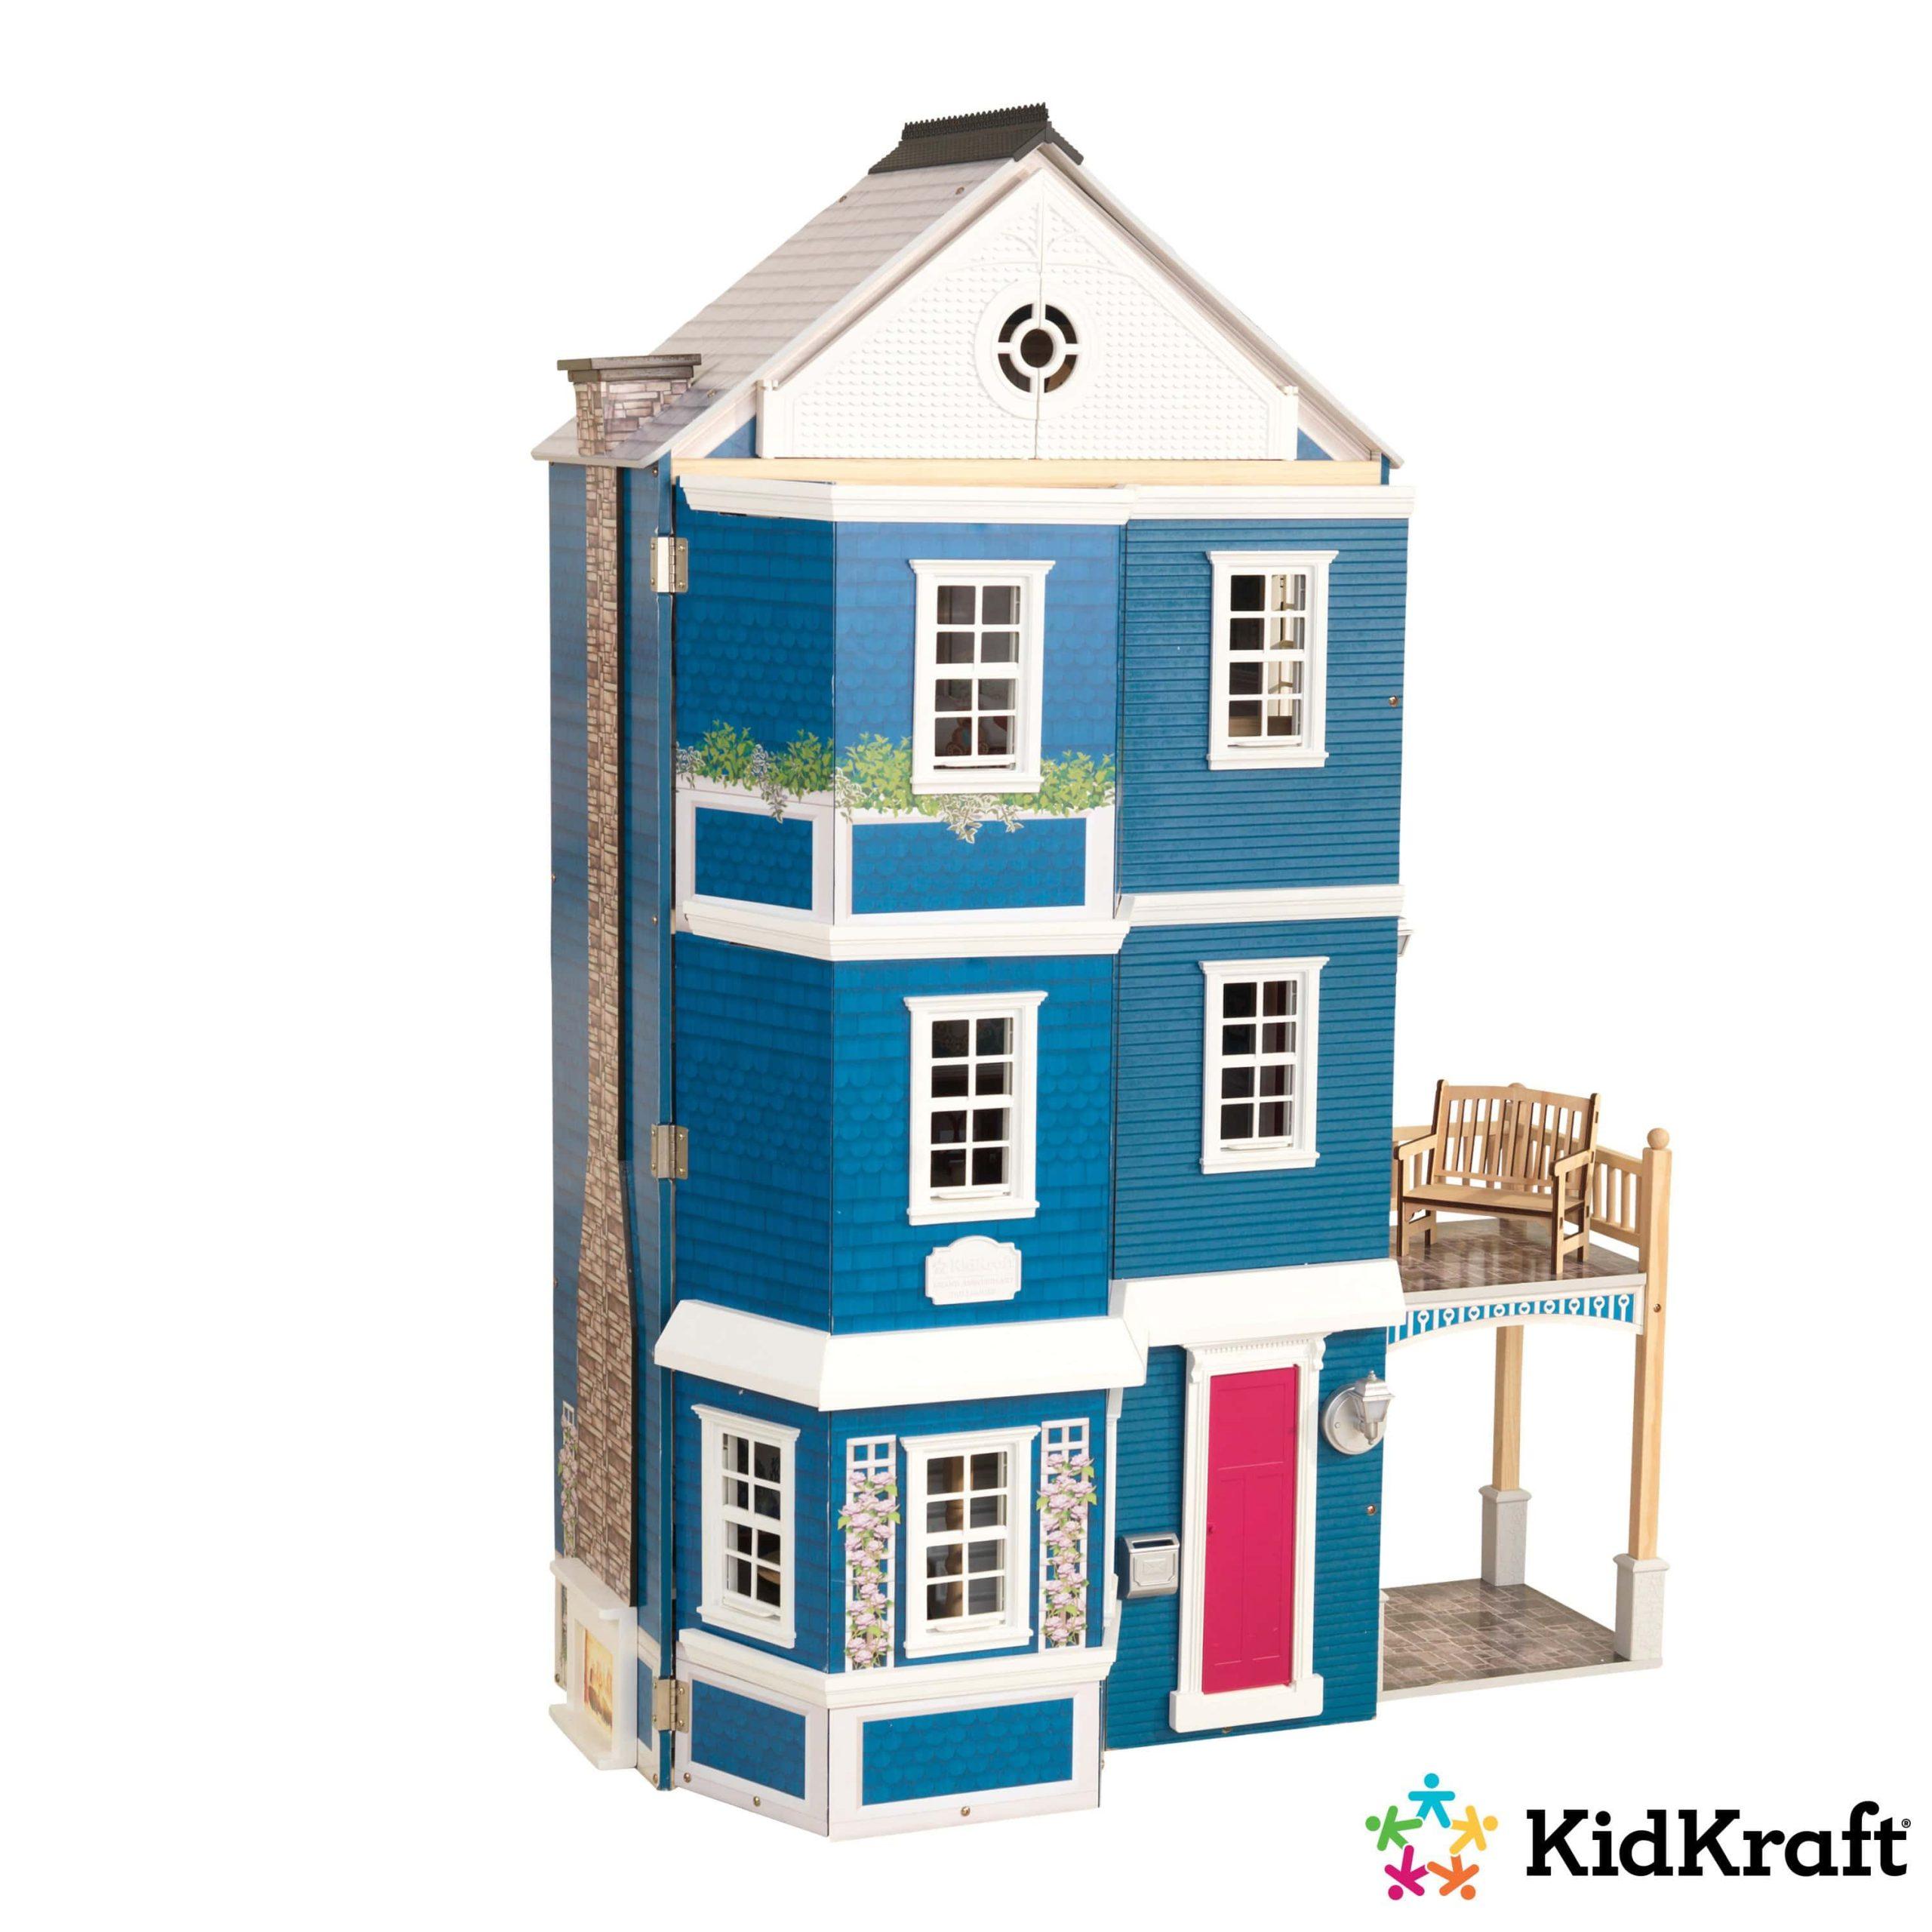 لعبة بيت الدمى KidKraft - Grand Anniversary Dollhouse - أزرق